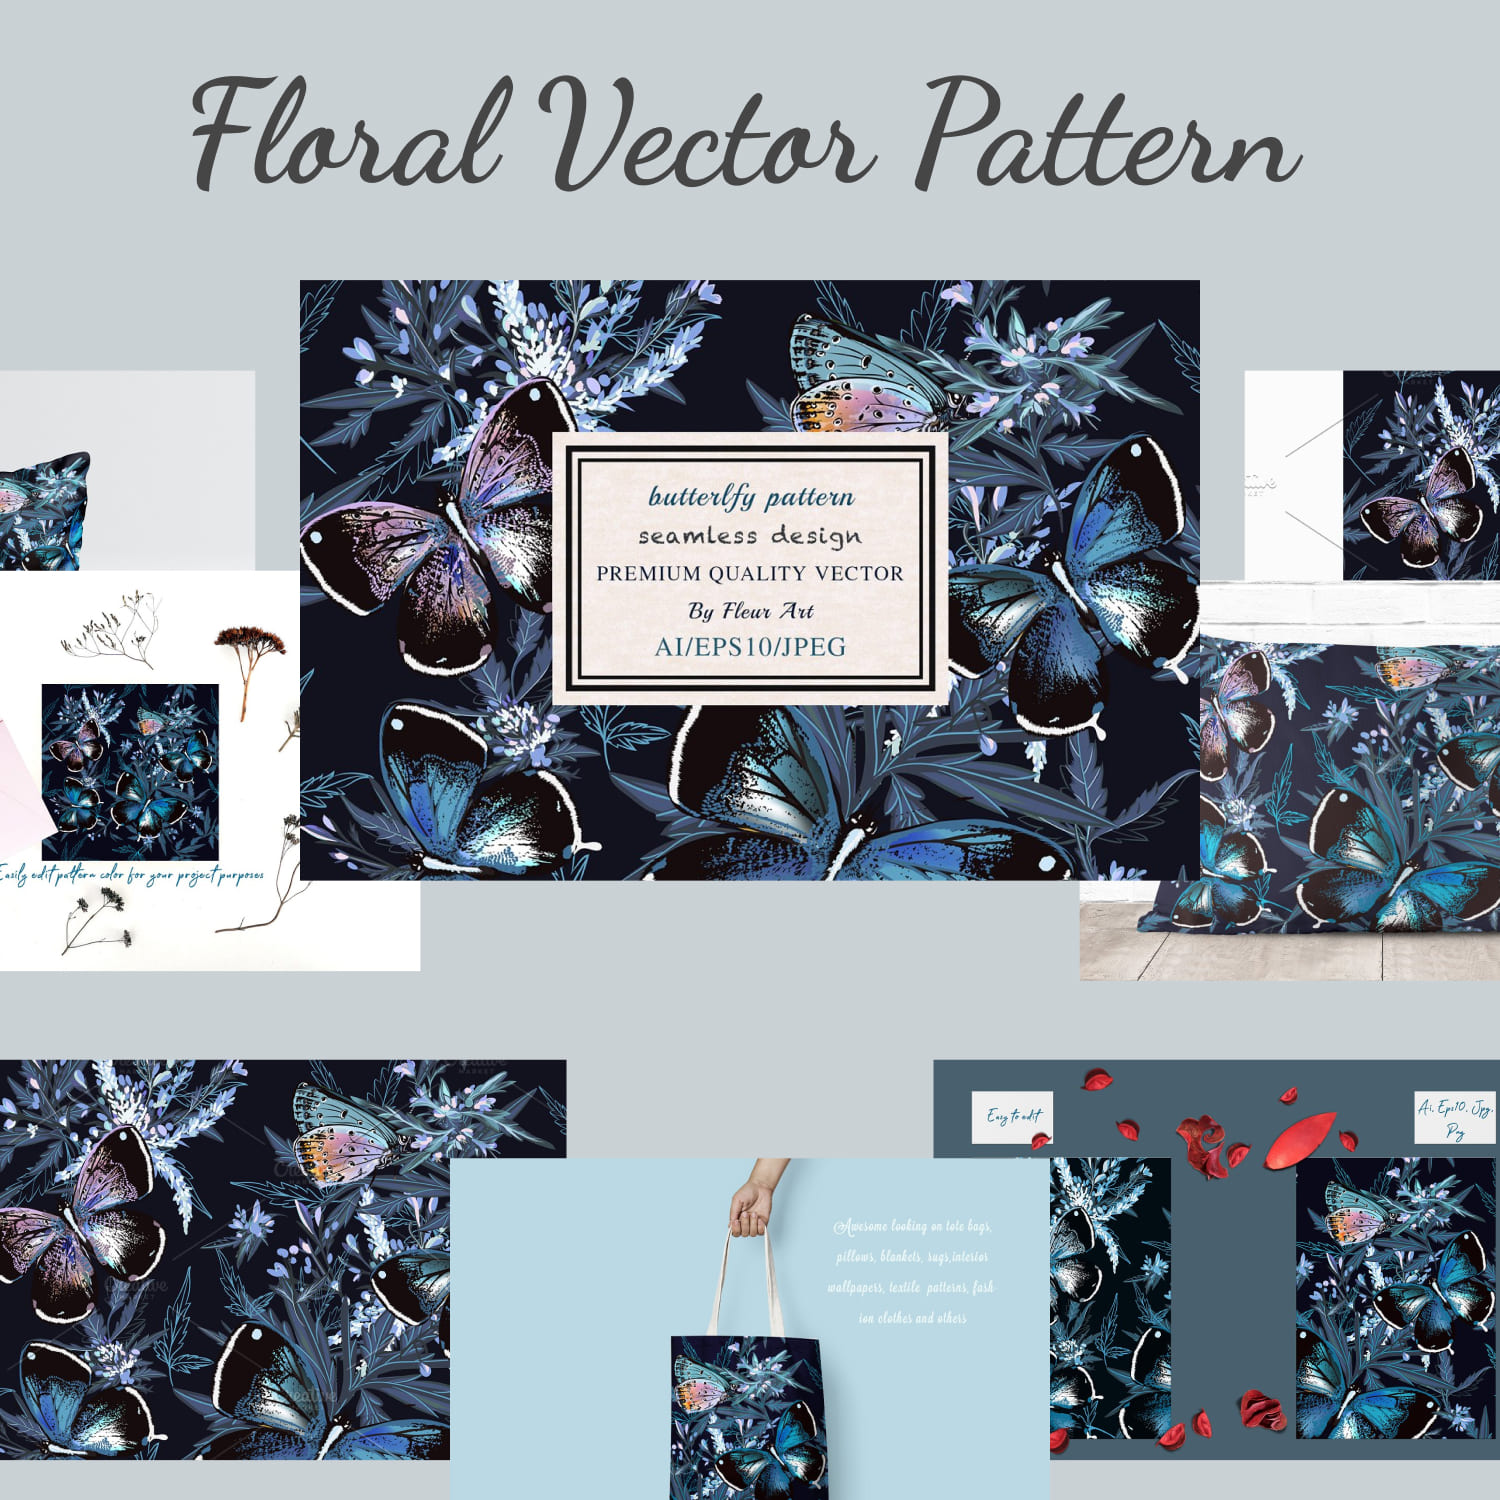 Floral vector pattern butterflies.